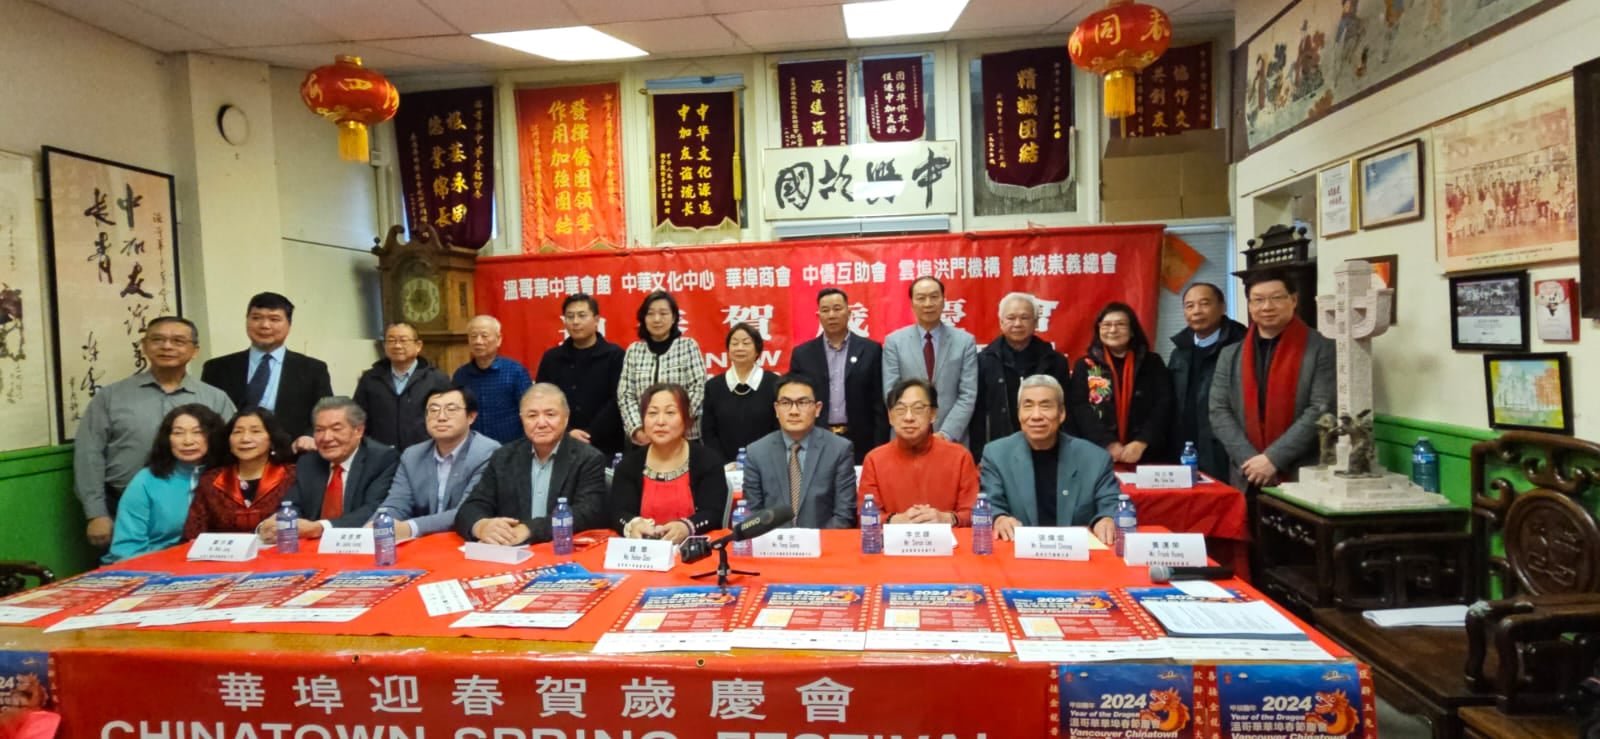 華埠春節慶會就在二月十一